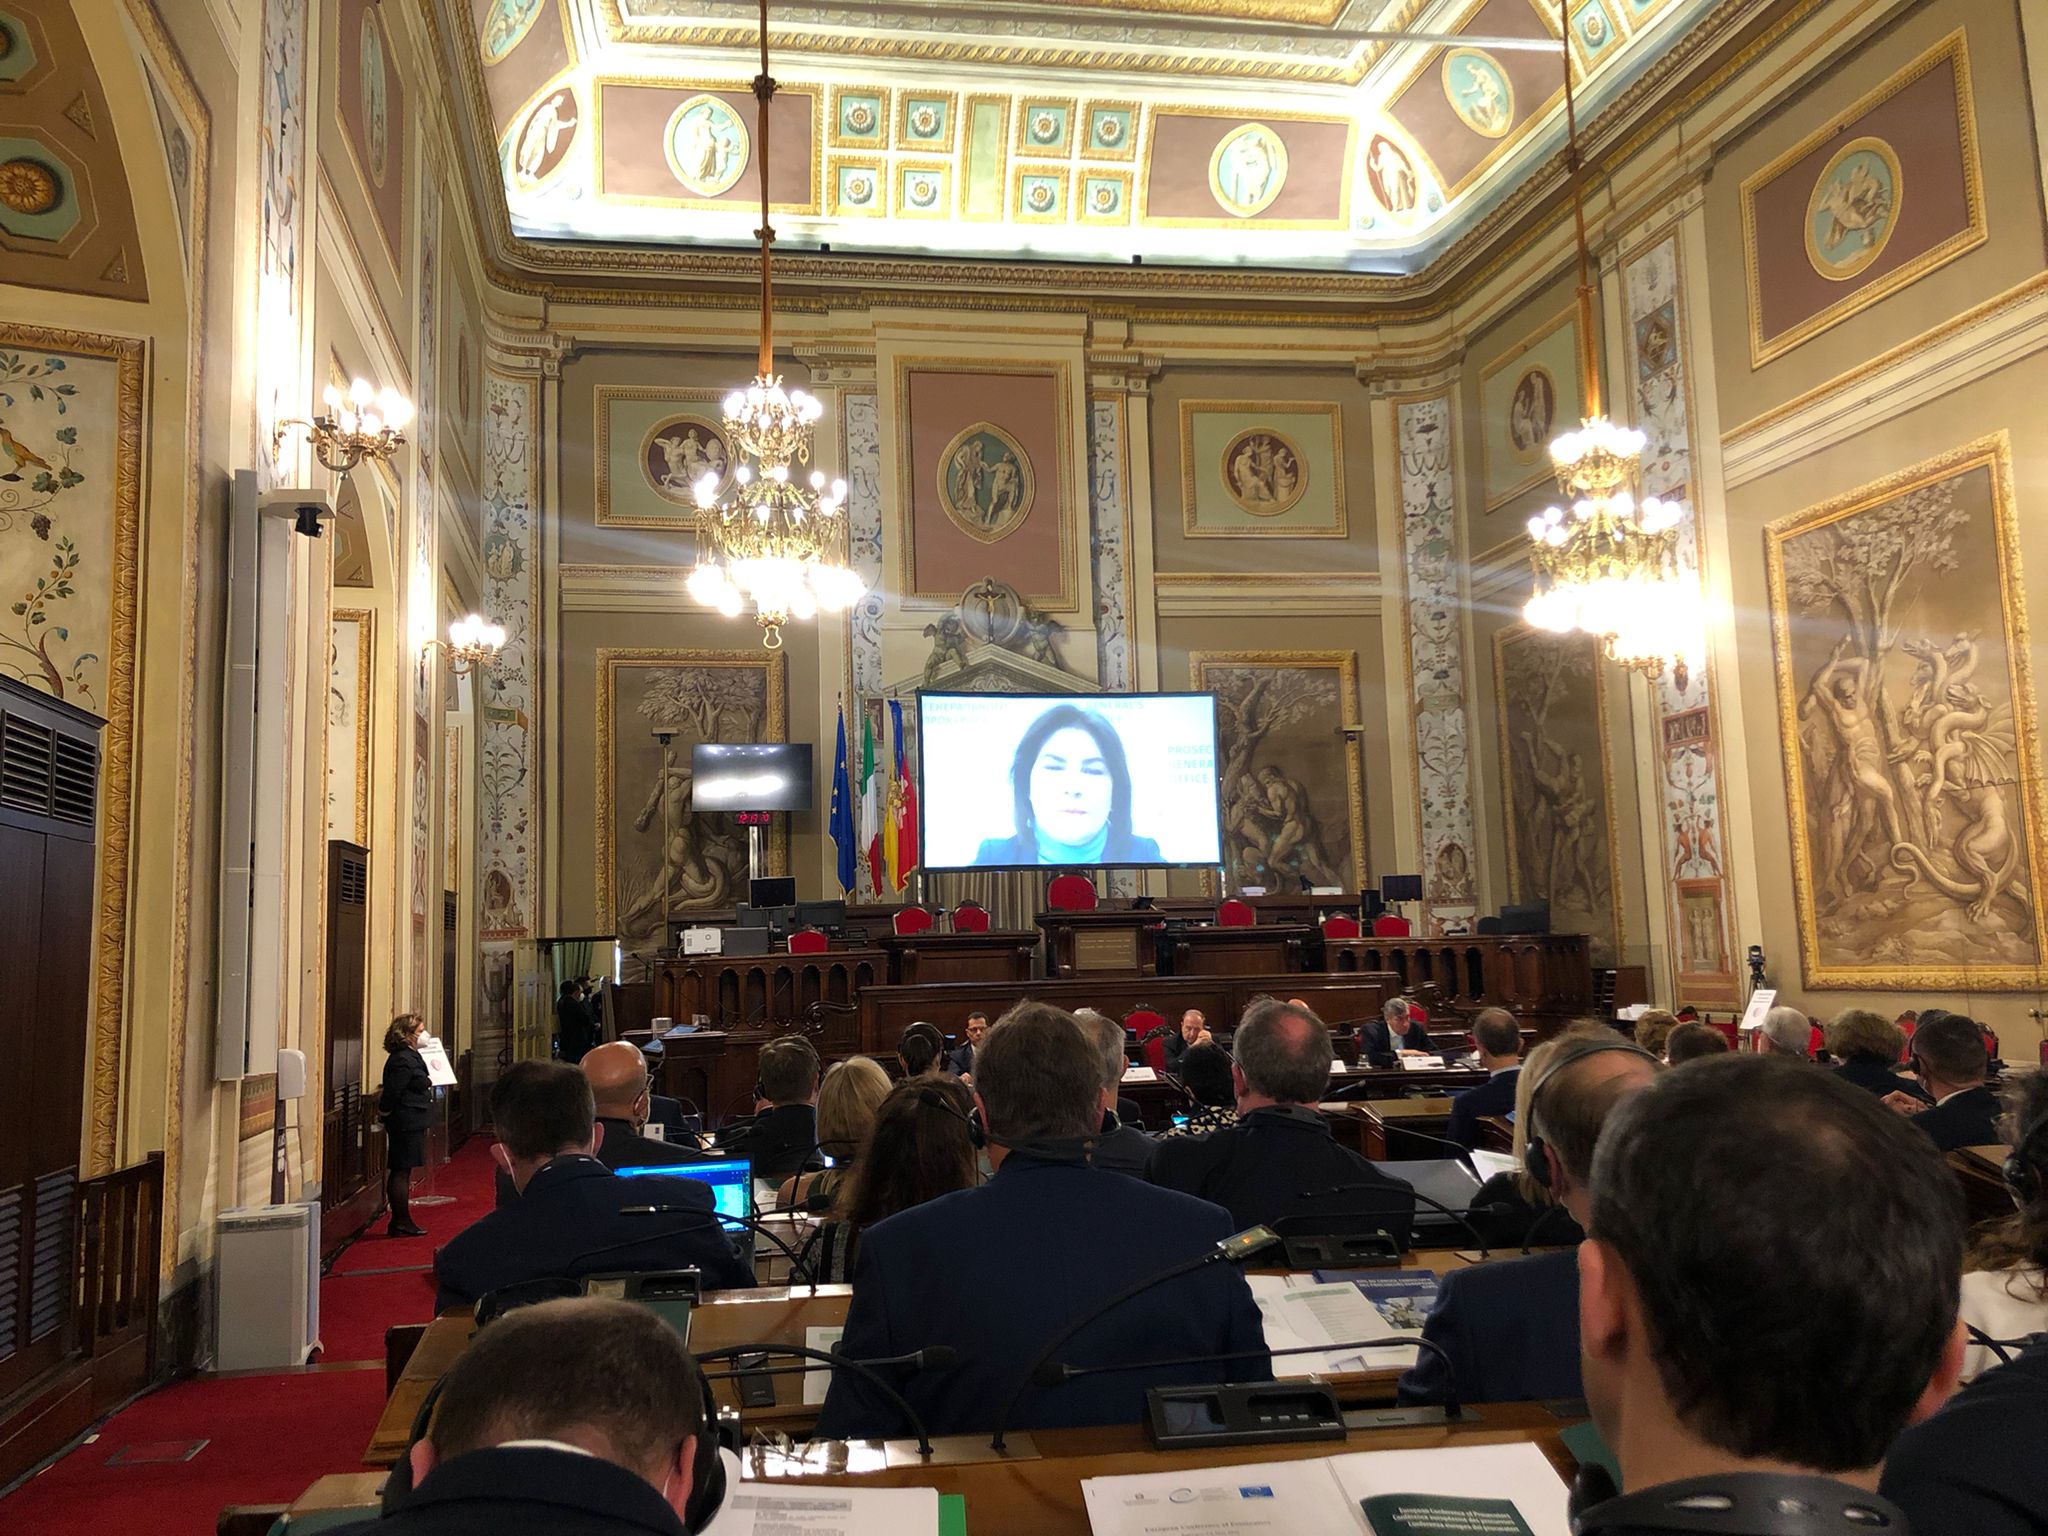 Attēls: Prokurori no visas Eiropas pulcējas starptautiskā konferencē Palermo